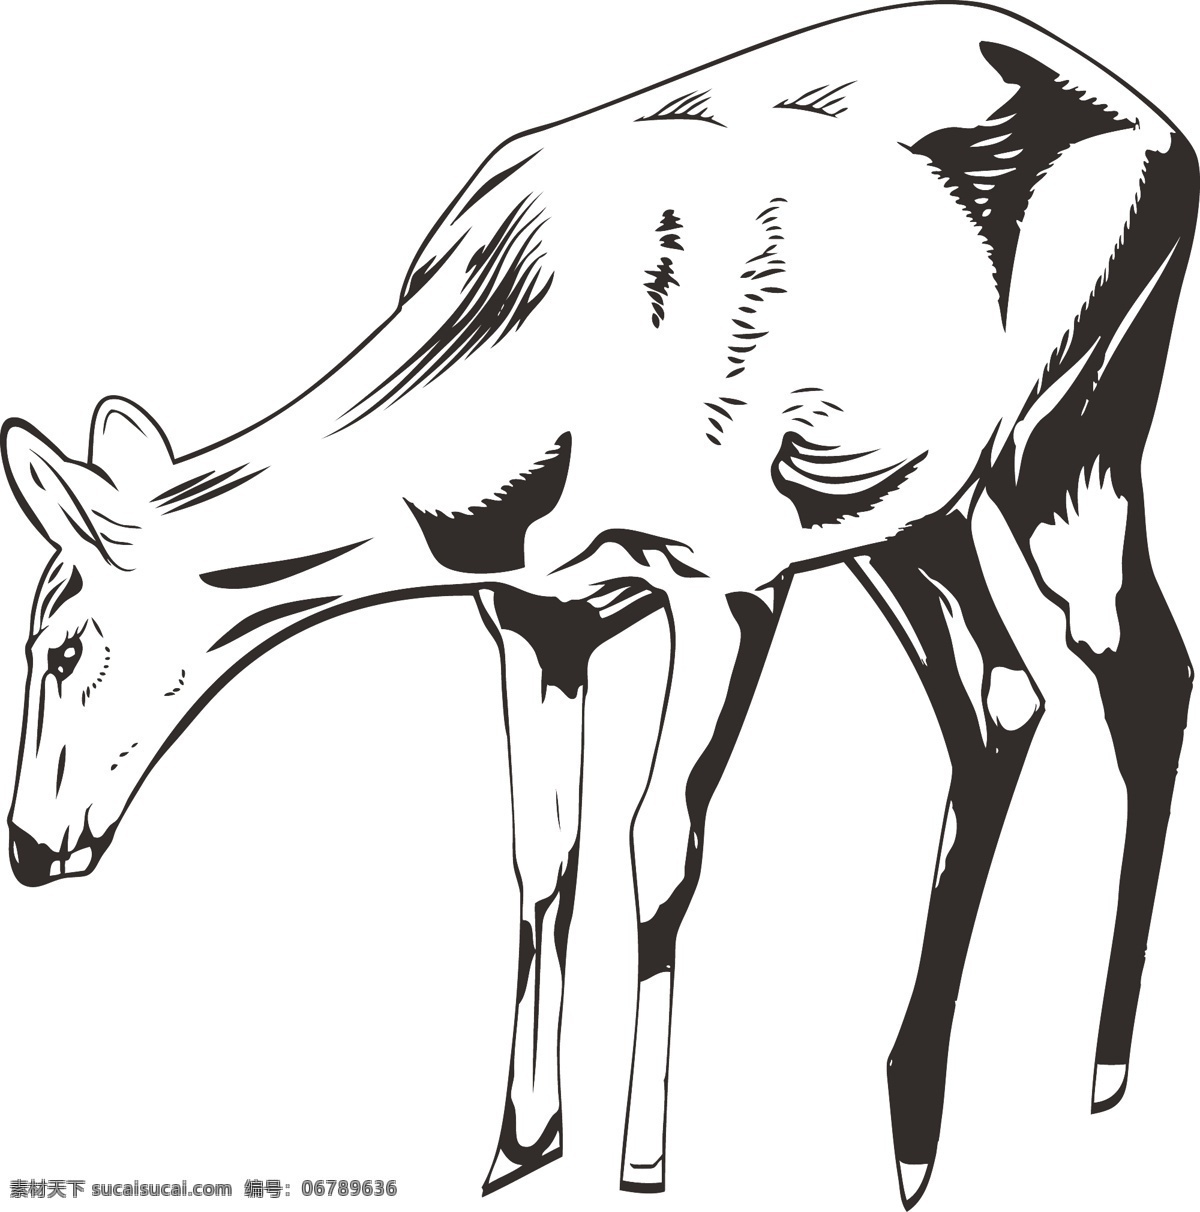 手绘 小鹿 动物 元素 简笔画 简笔画小鹿 手绘小鹿 手绘动物 简约小鹿 写实动物 动物图案 动物装饰 简笔画动物